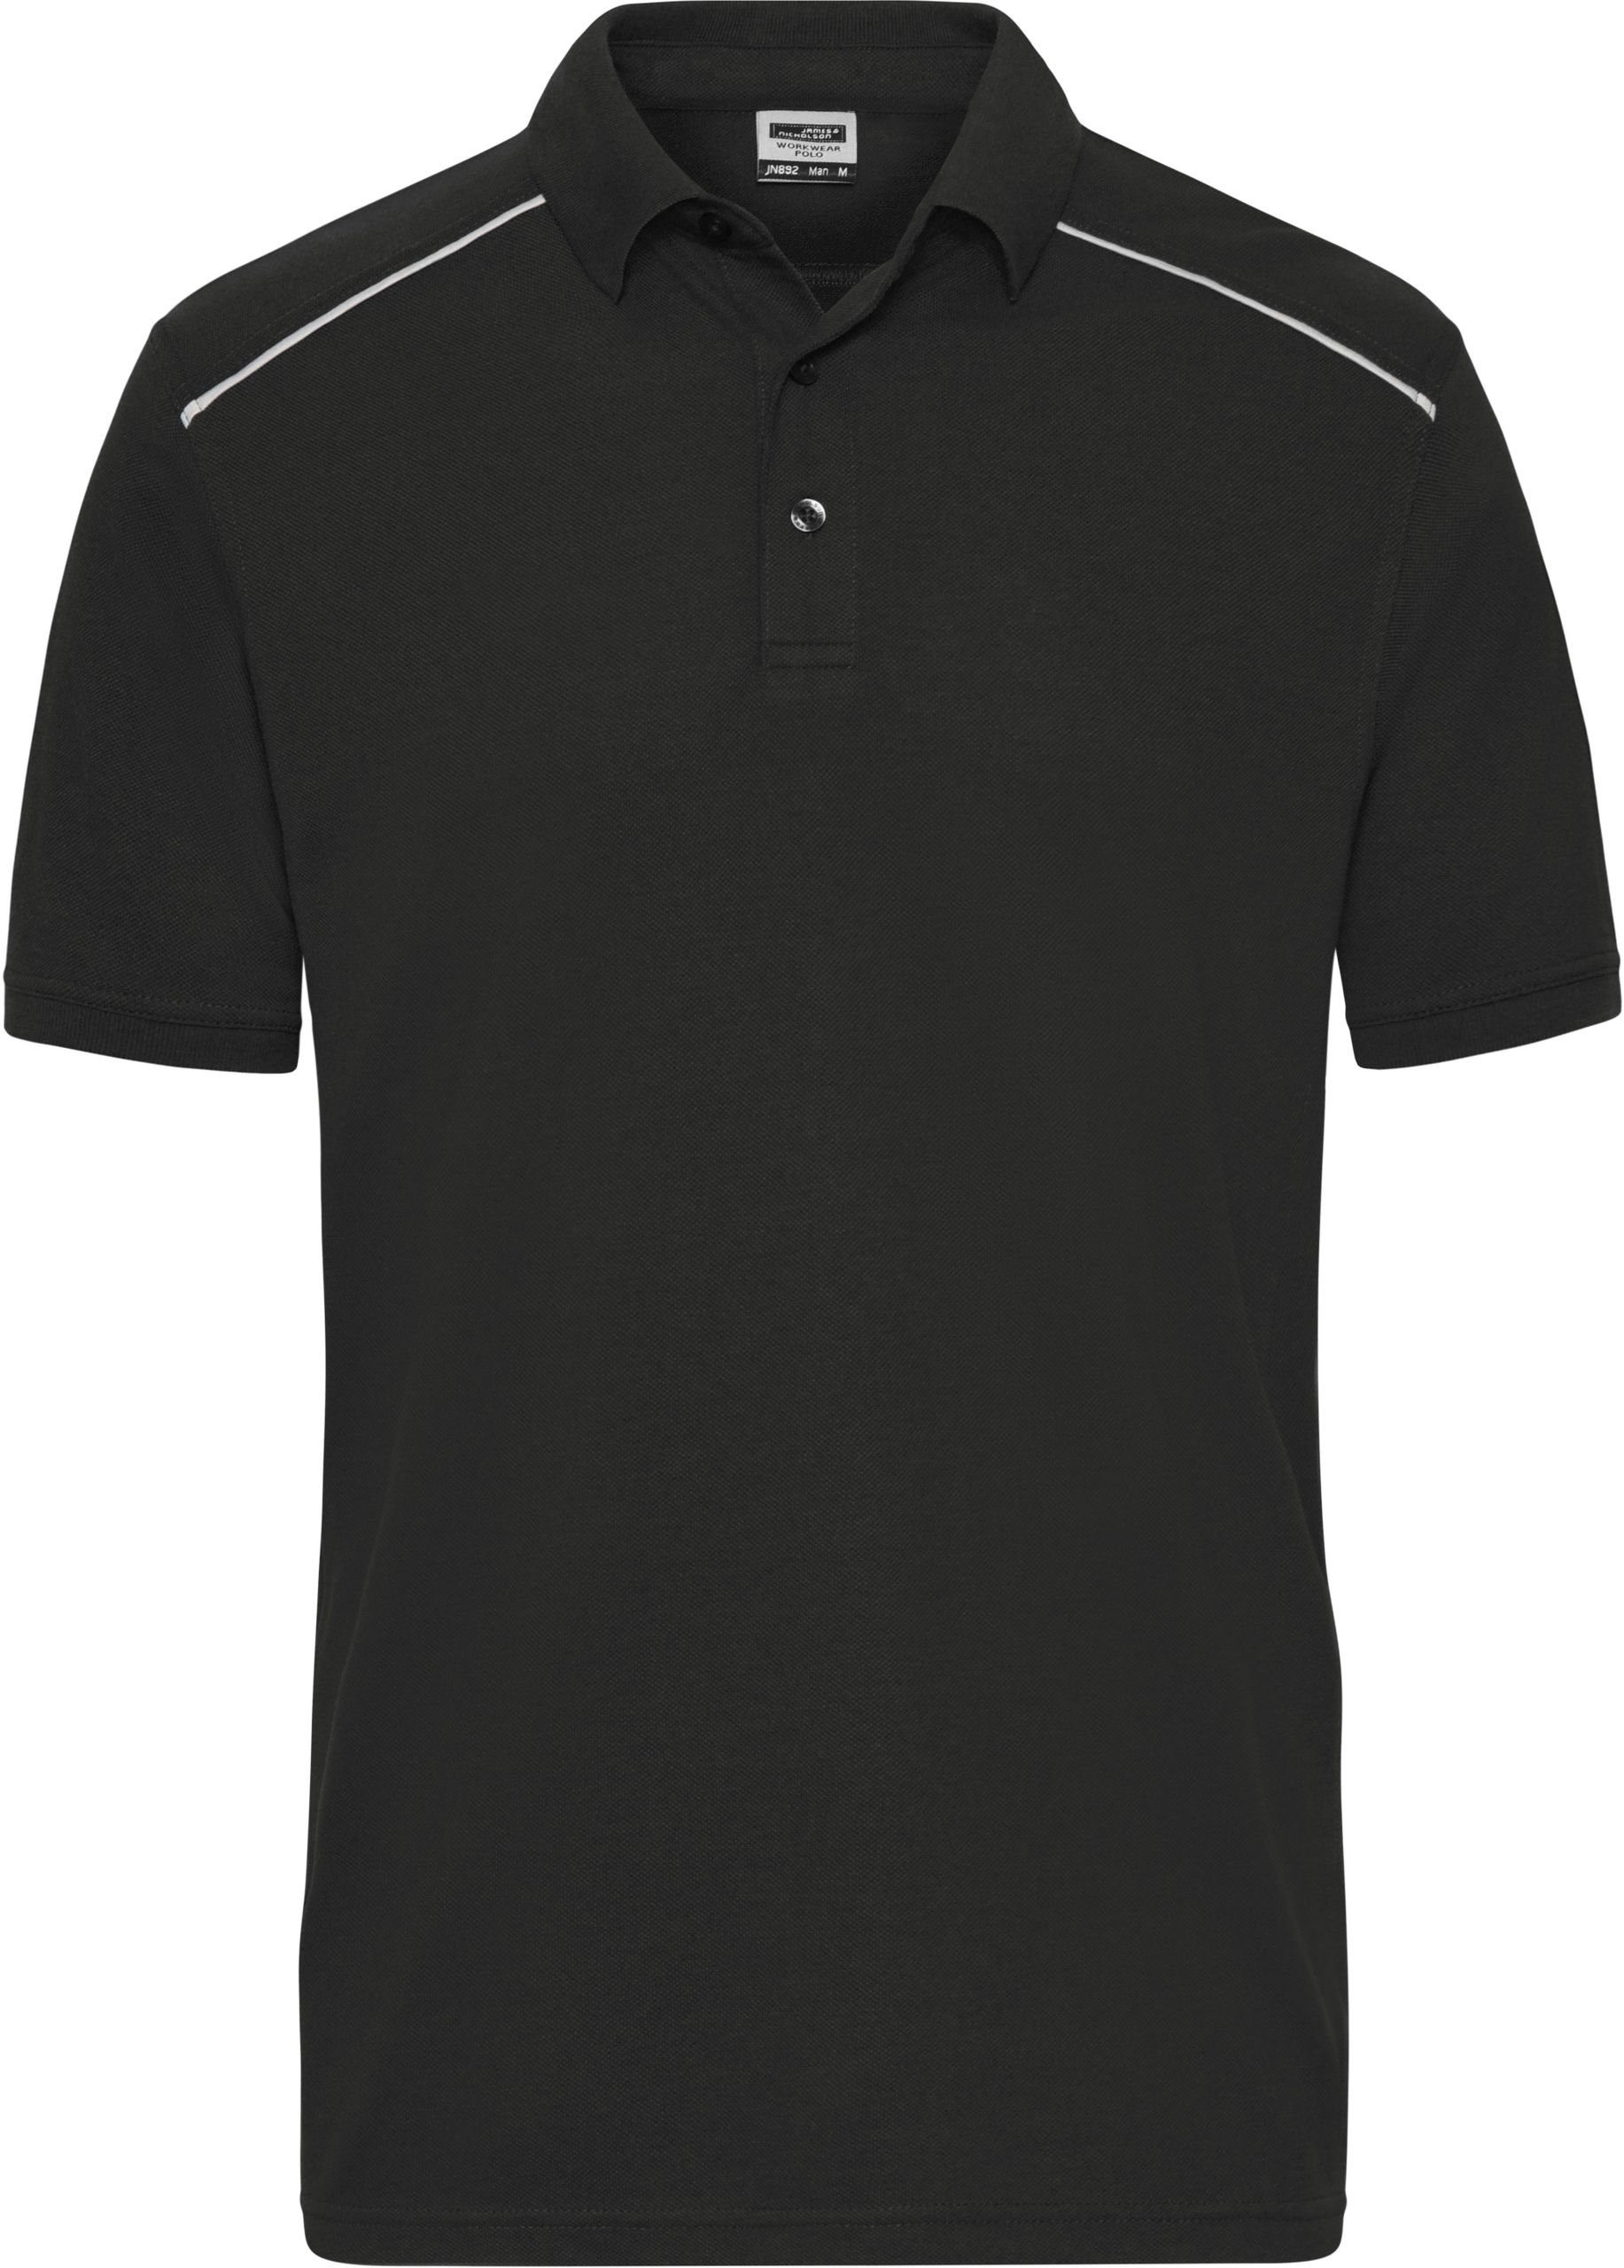 Übergrößen Polo -Solid- FaS50892 James Nicholson in Workwear Poloshirt & Black auch